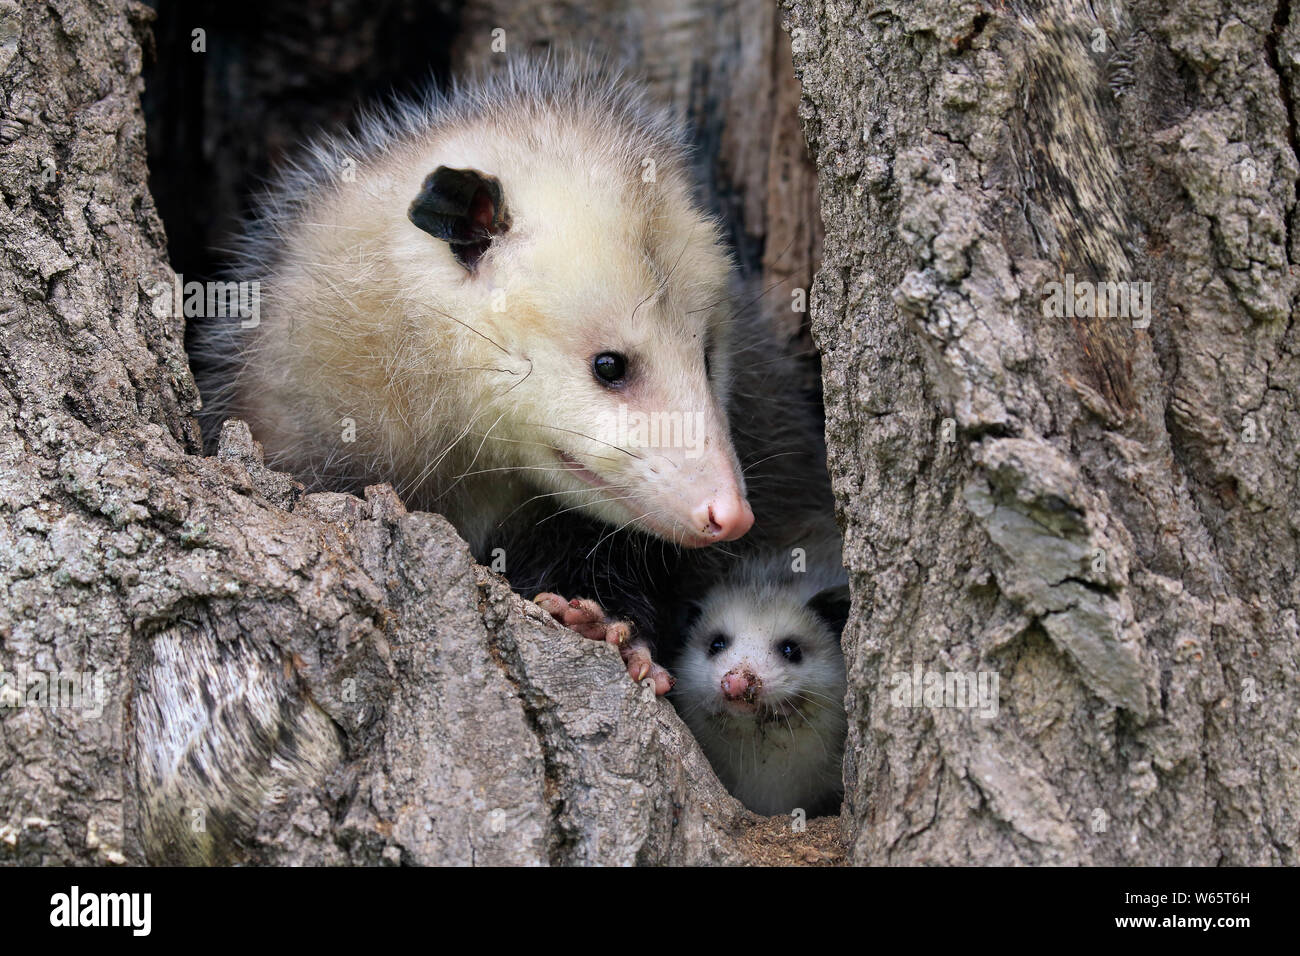 L'opossum d'Amérique du Nord, l'opossum, avec de jeunes adultes à sortir de den, Pine Comté (Minnesota), USA, Amérique du Nord, (Didelphis virginiana) Banque D'Images